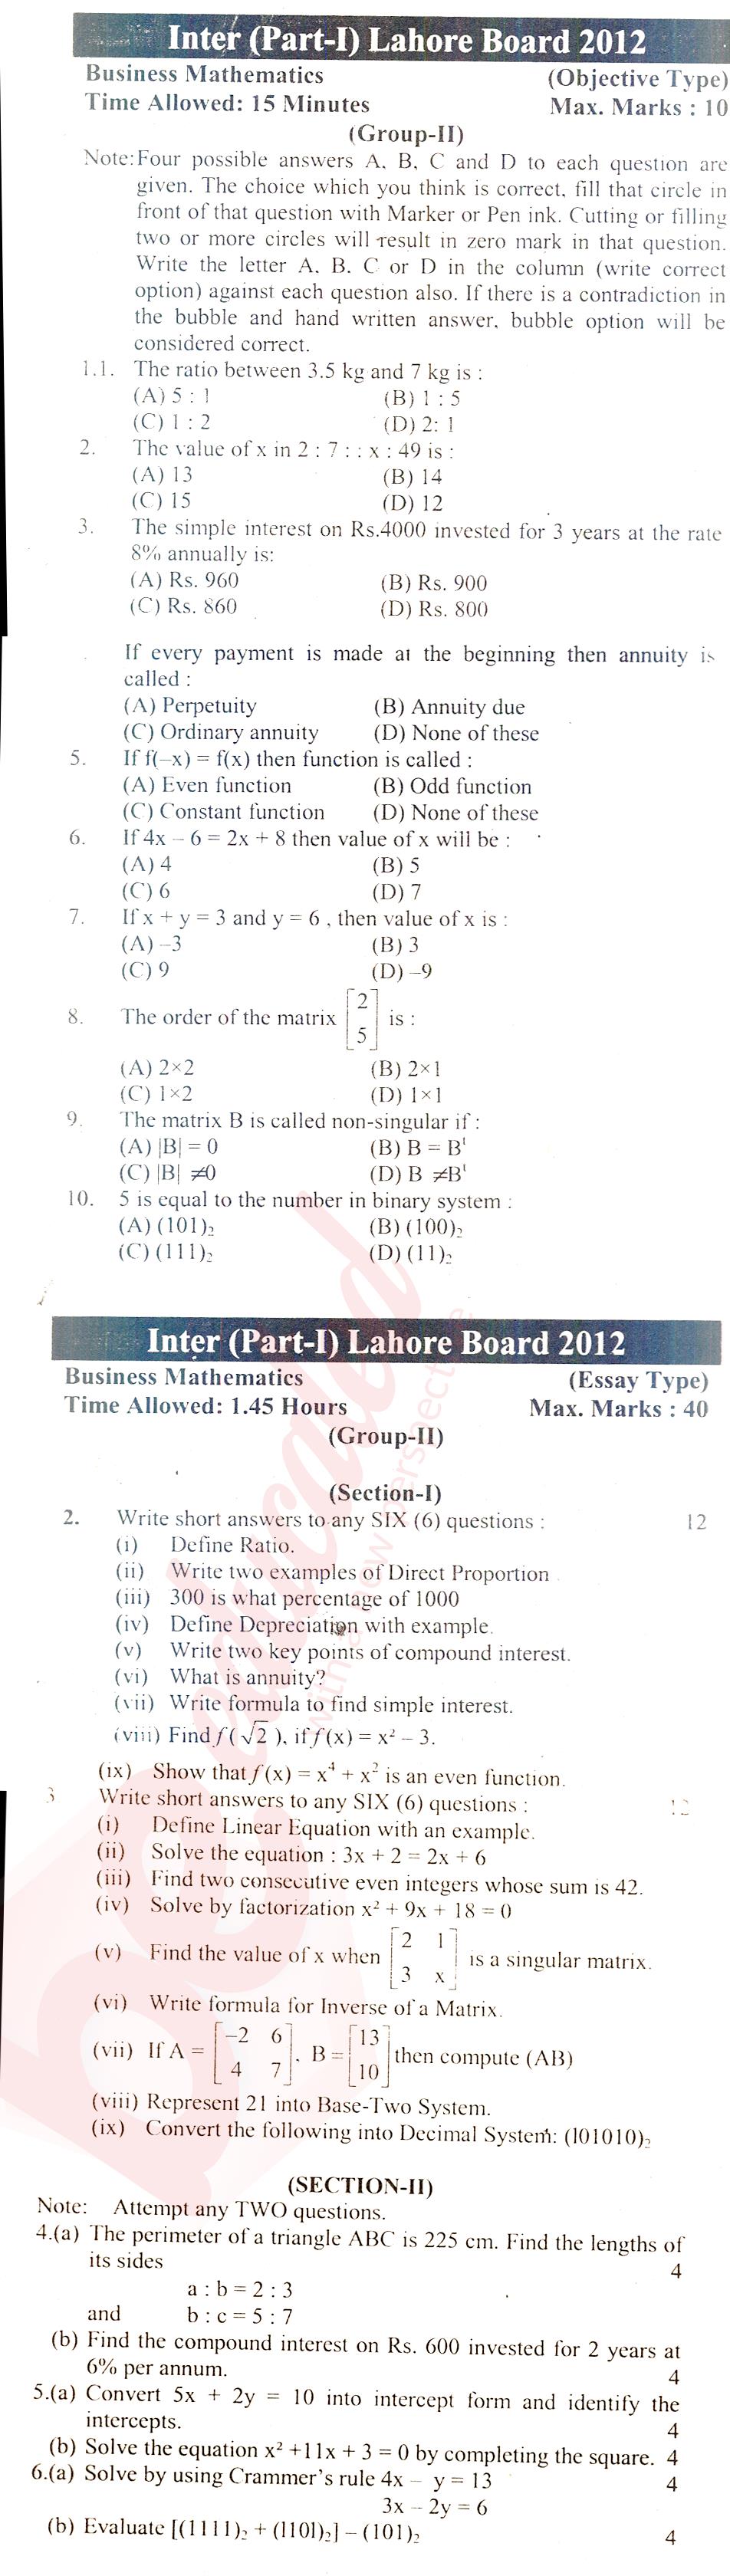 Business Mathematics ICOM Part 1 Past Paper Group 2 BISE Lahore 2012